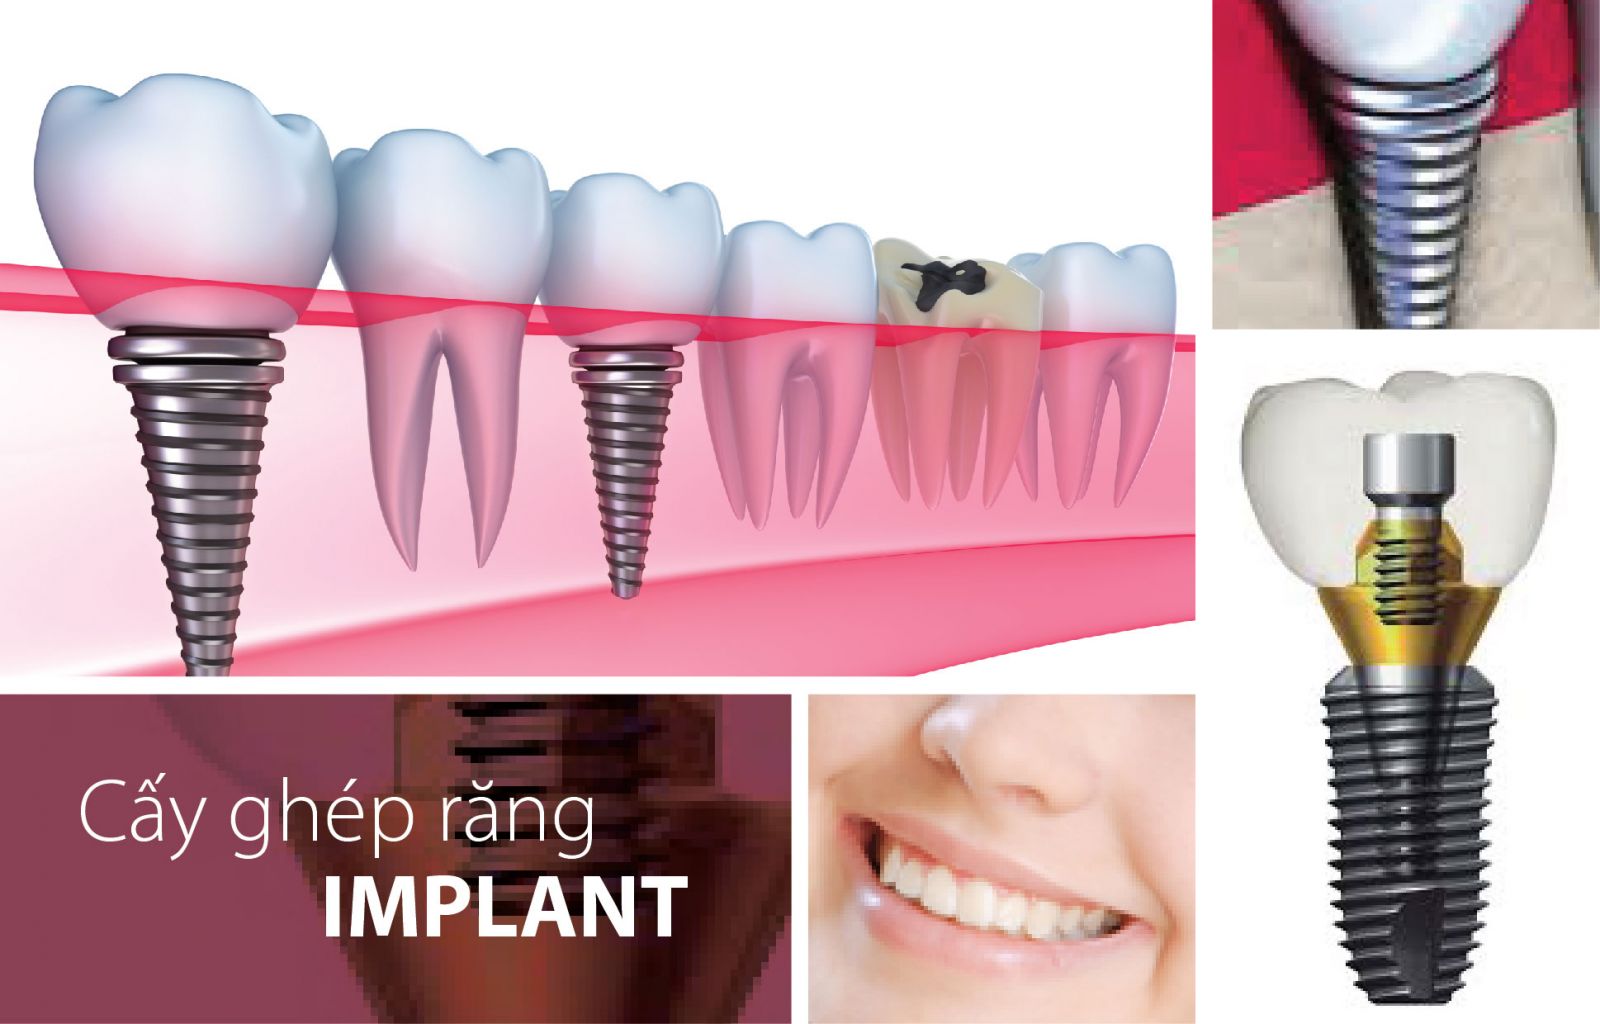 Quy trình cấy ghép răng Implant